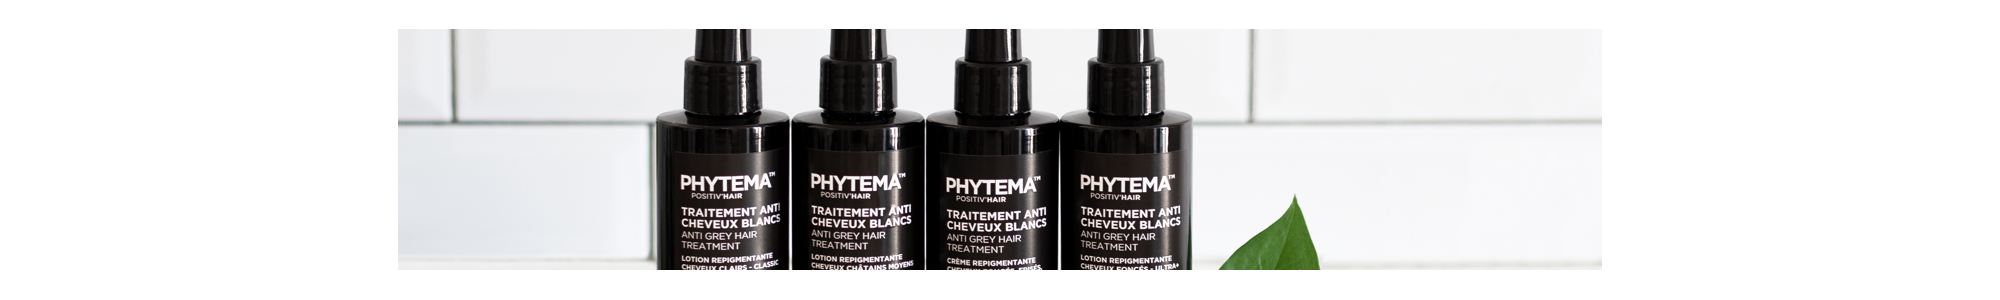 Promotions sur des cosmétiques naturels et biologiques - Phytema